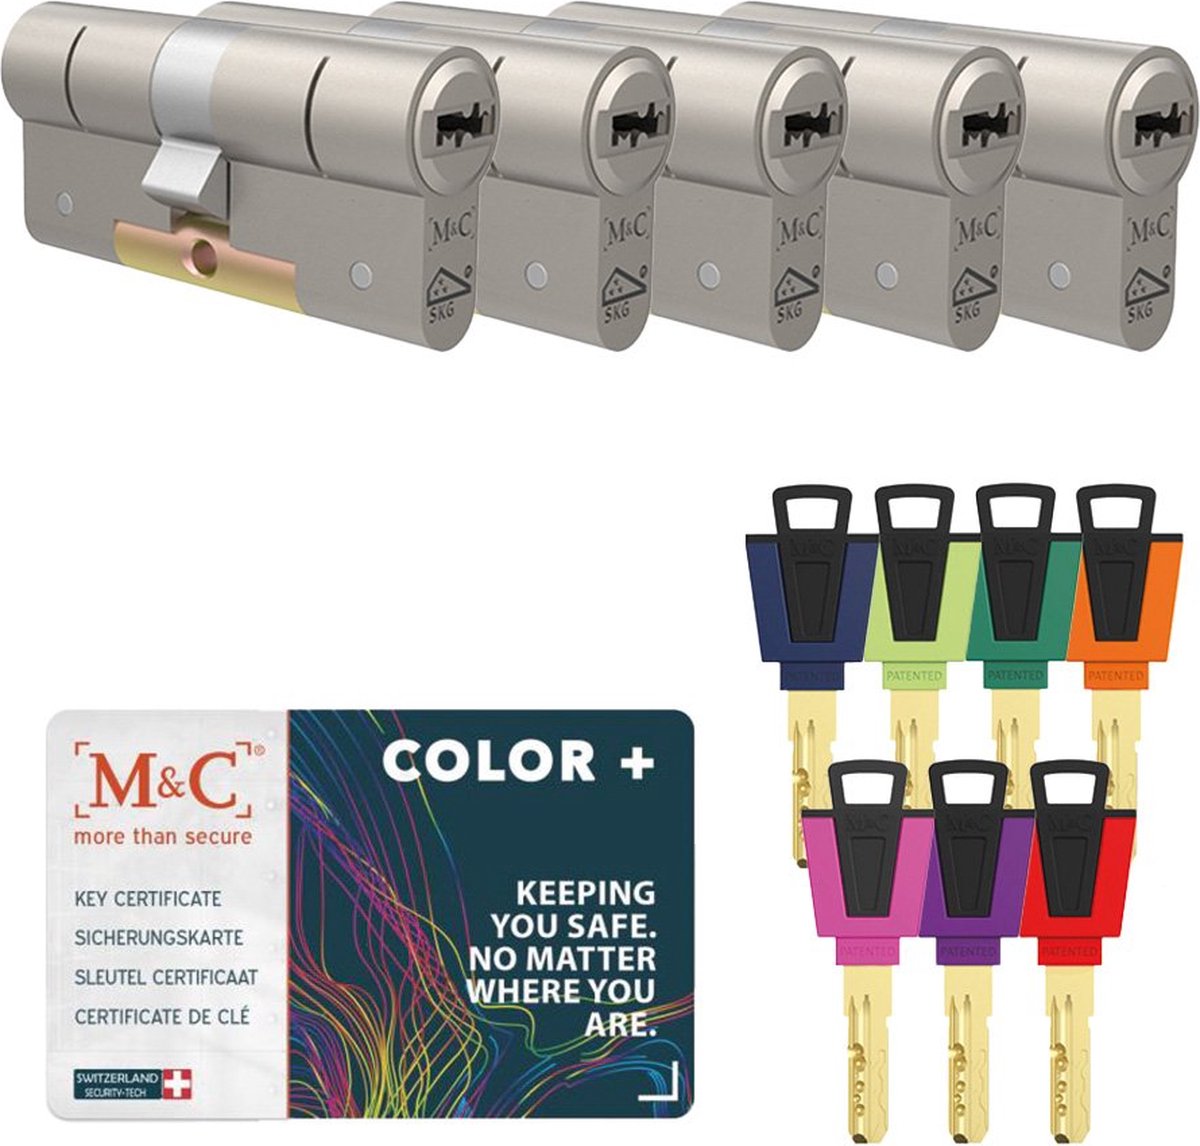 M&C Color+ SKG*** cilinderslot gelijksluitende set van 5